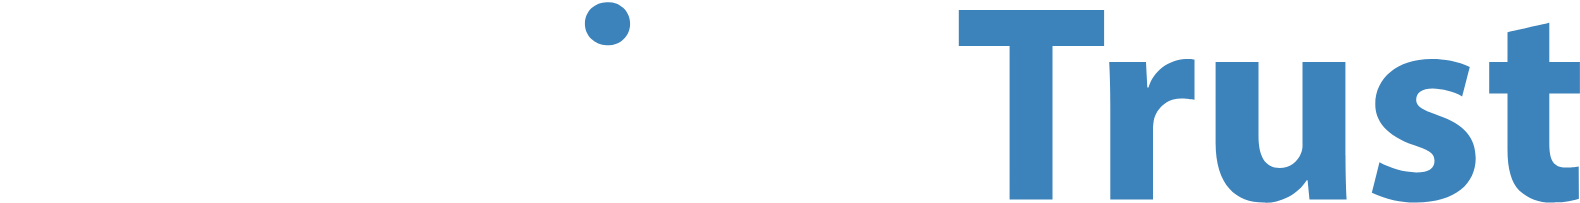 NetLink Trust logo grand pour les fonds sombres (PNG transparent)